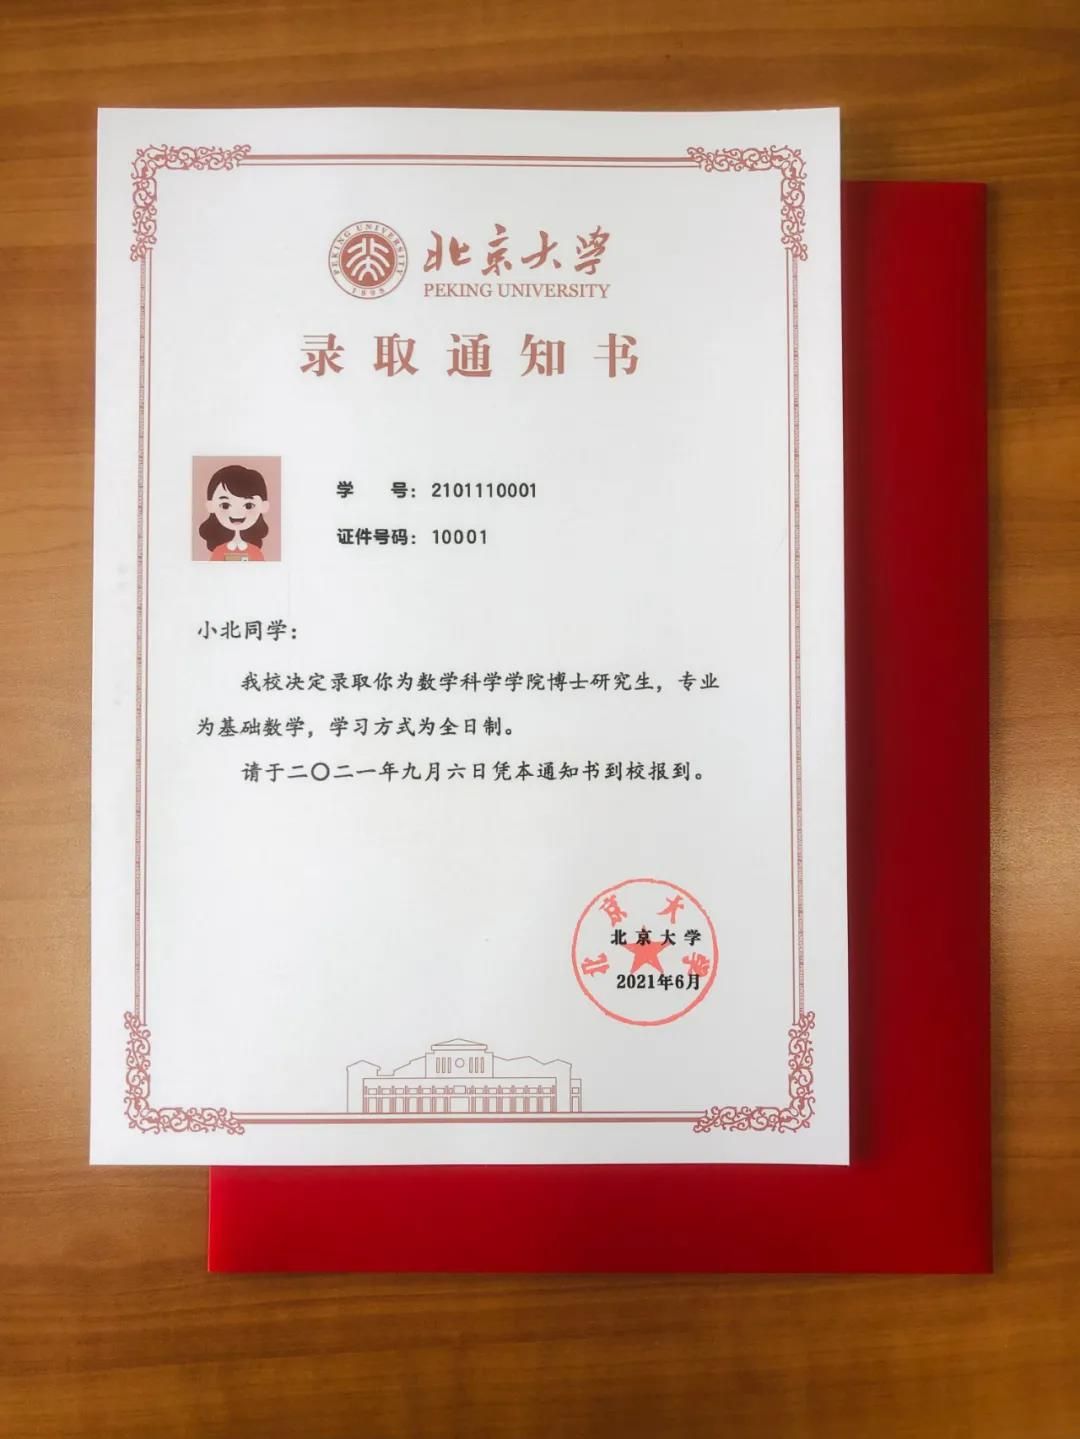 录取通知书内页使用北京大学专用信纸,衬水纹底色配以北大红勾勒出